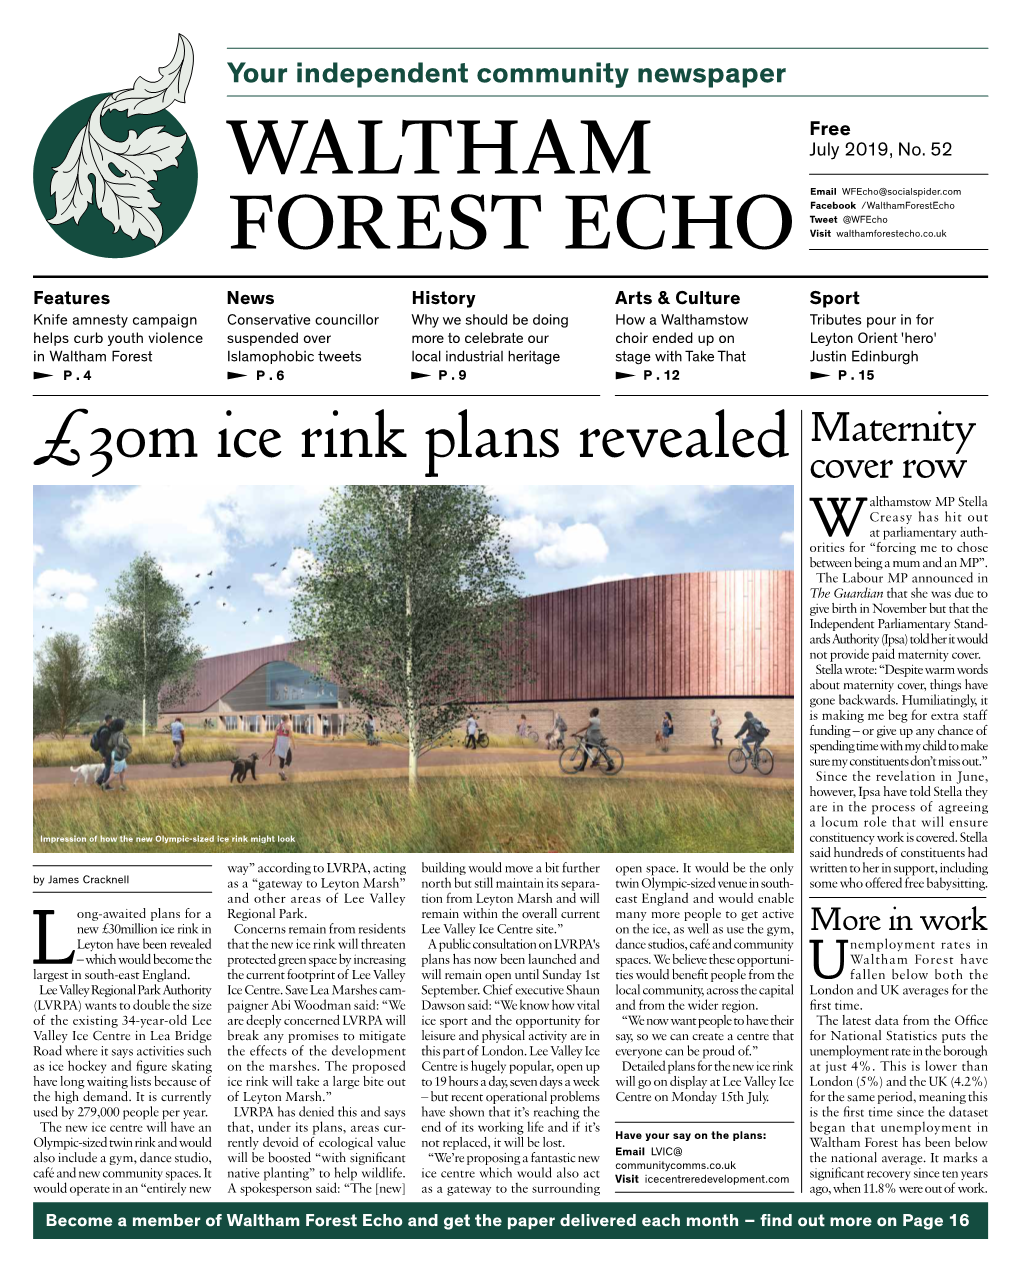 Waltham Forest Echo #52, July 2019